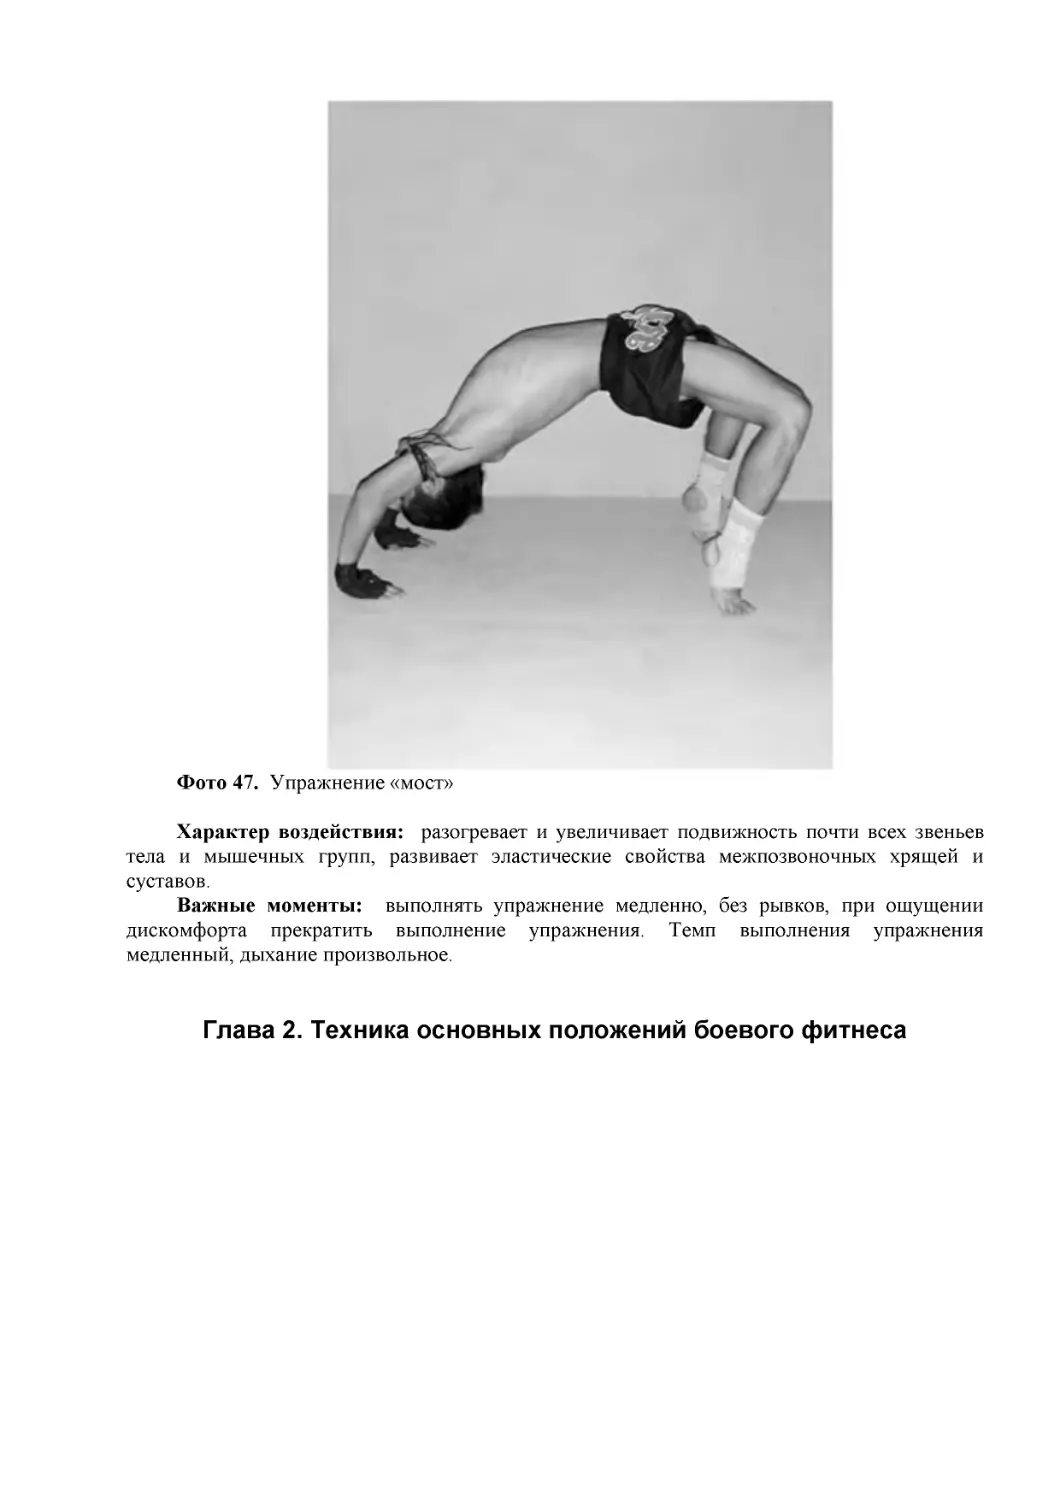 ﻿Глава 2. Техника основных положений боевого фитнес